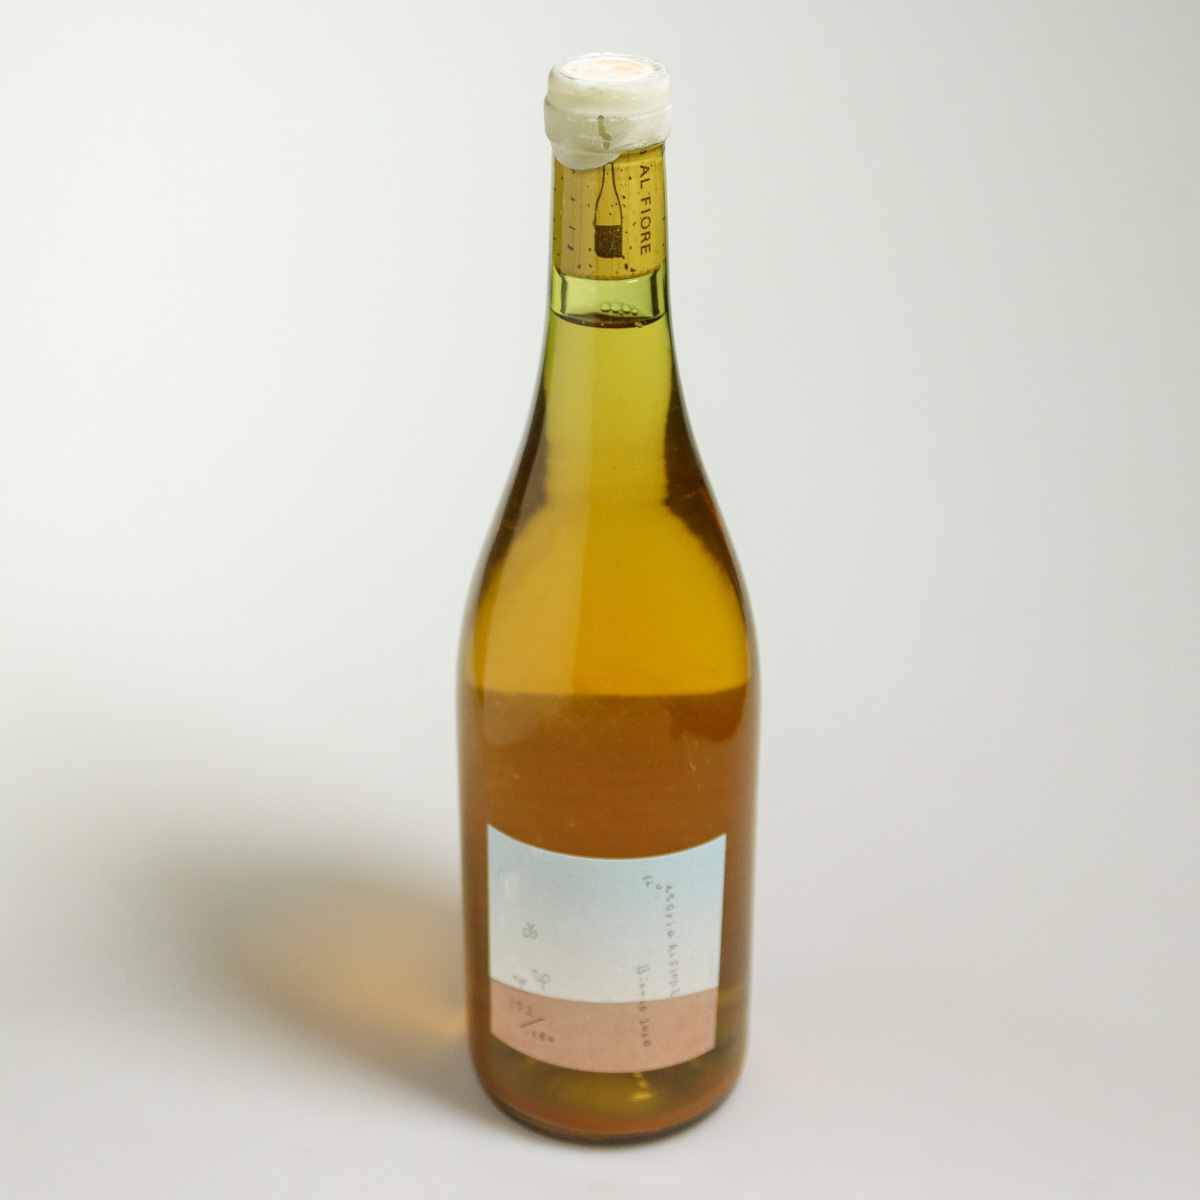 vin nature japonais blanc bianco 2020 par Fattoria al Fiore